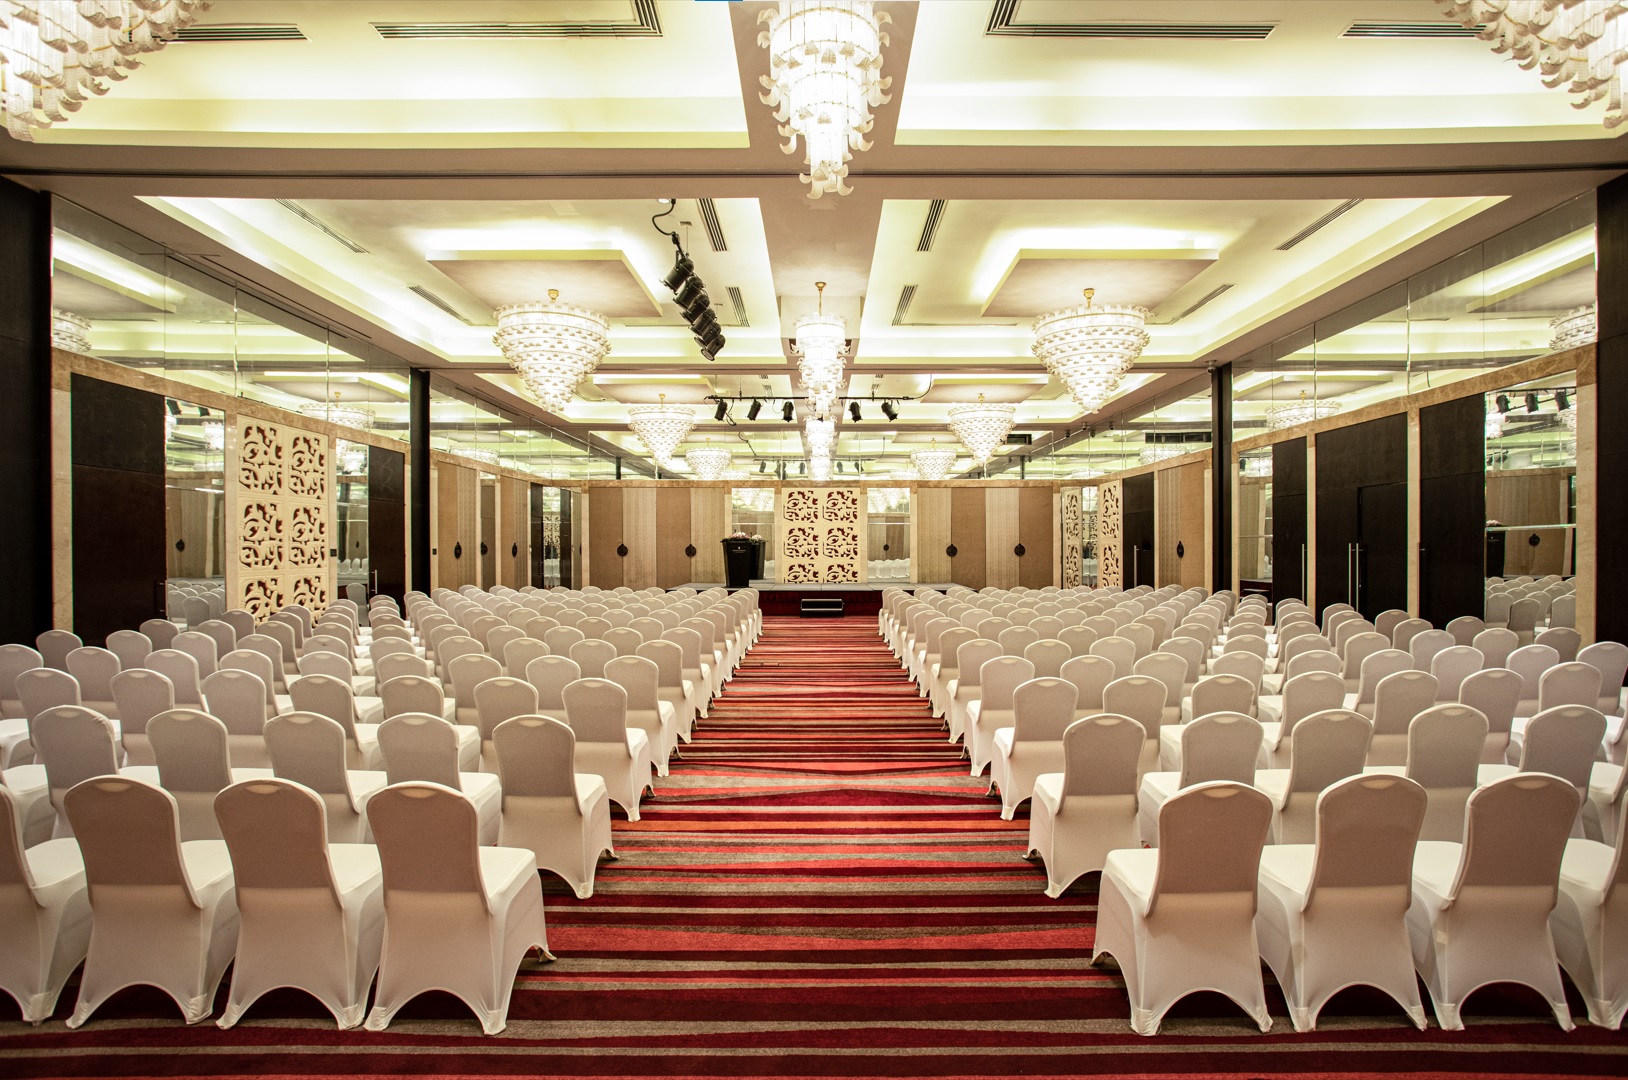 Khu hội nghị của khách sạn InterContinental Hanoi Westlake bao gồm 5 phòng họp với kích cỡ khách nhau, với phòng hợp lớn có sức chứa tối đa 450 khách.